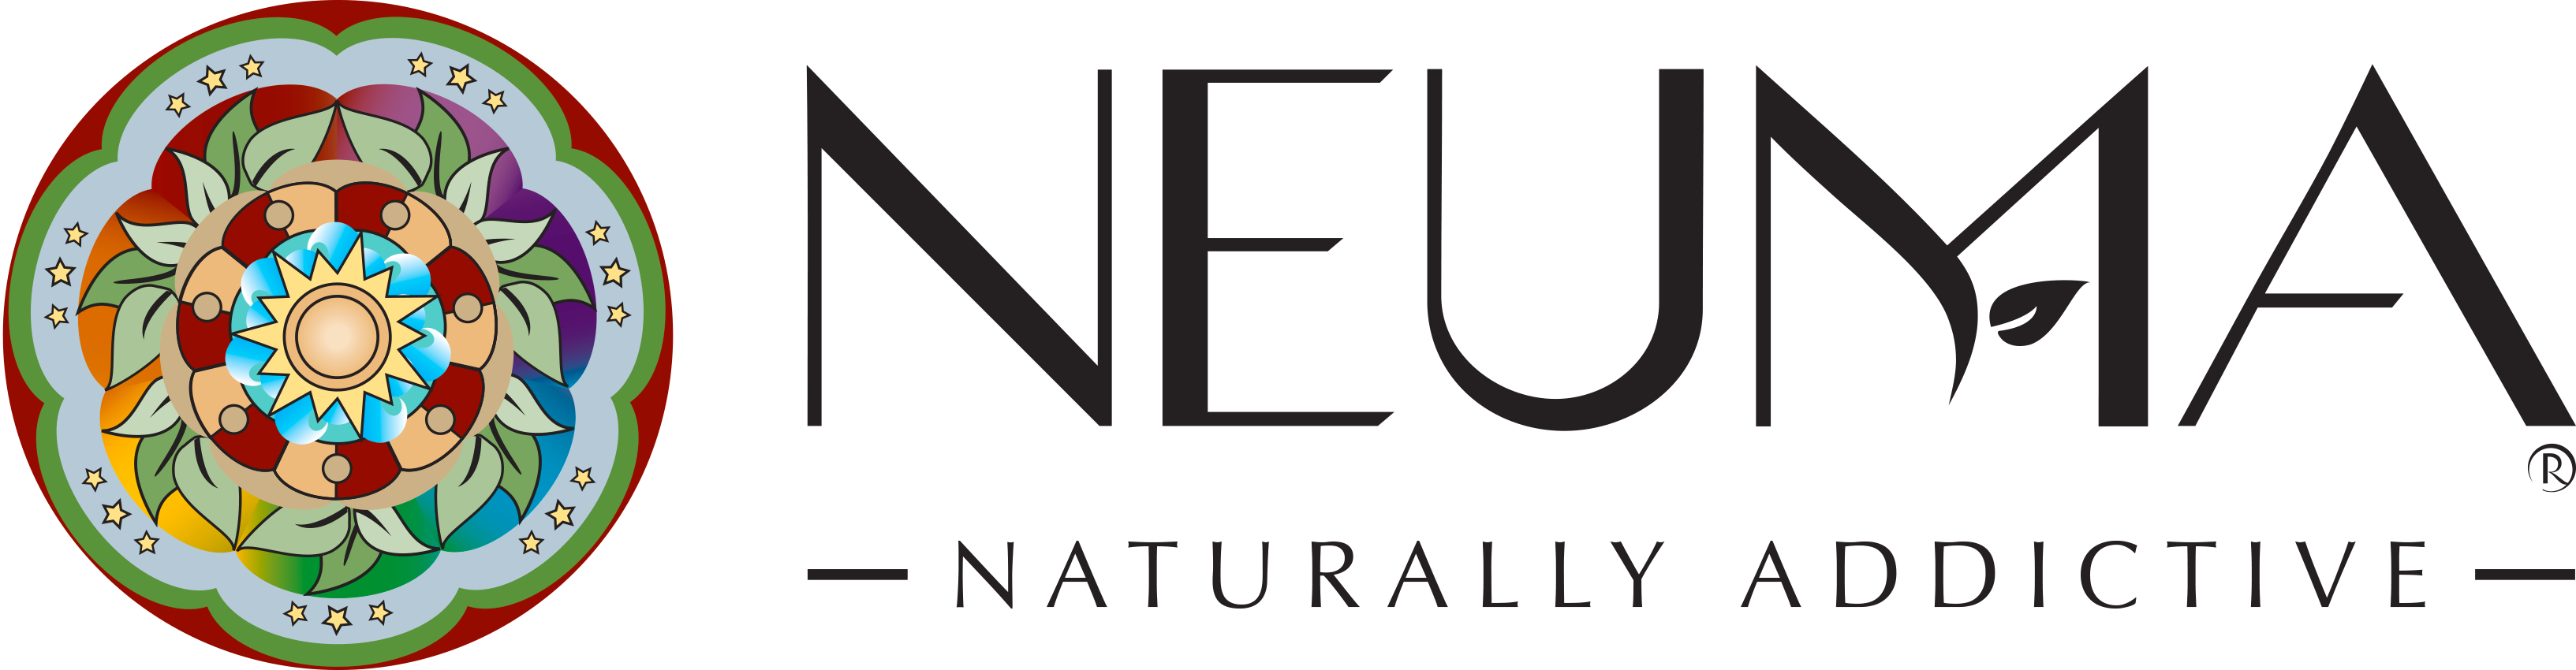 Neuma.cz | logo 2